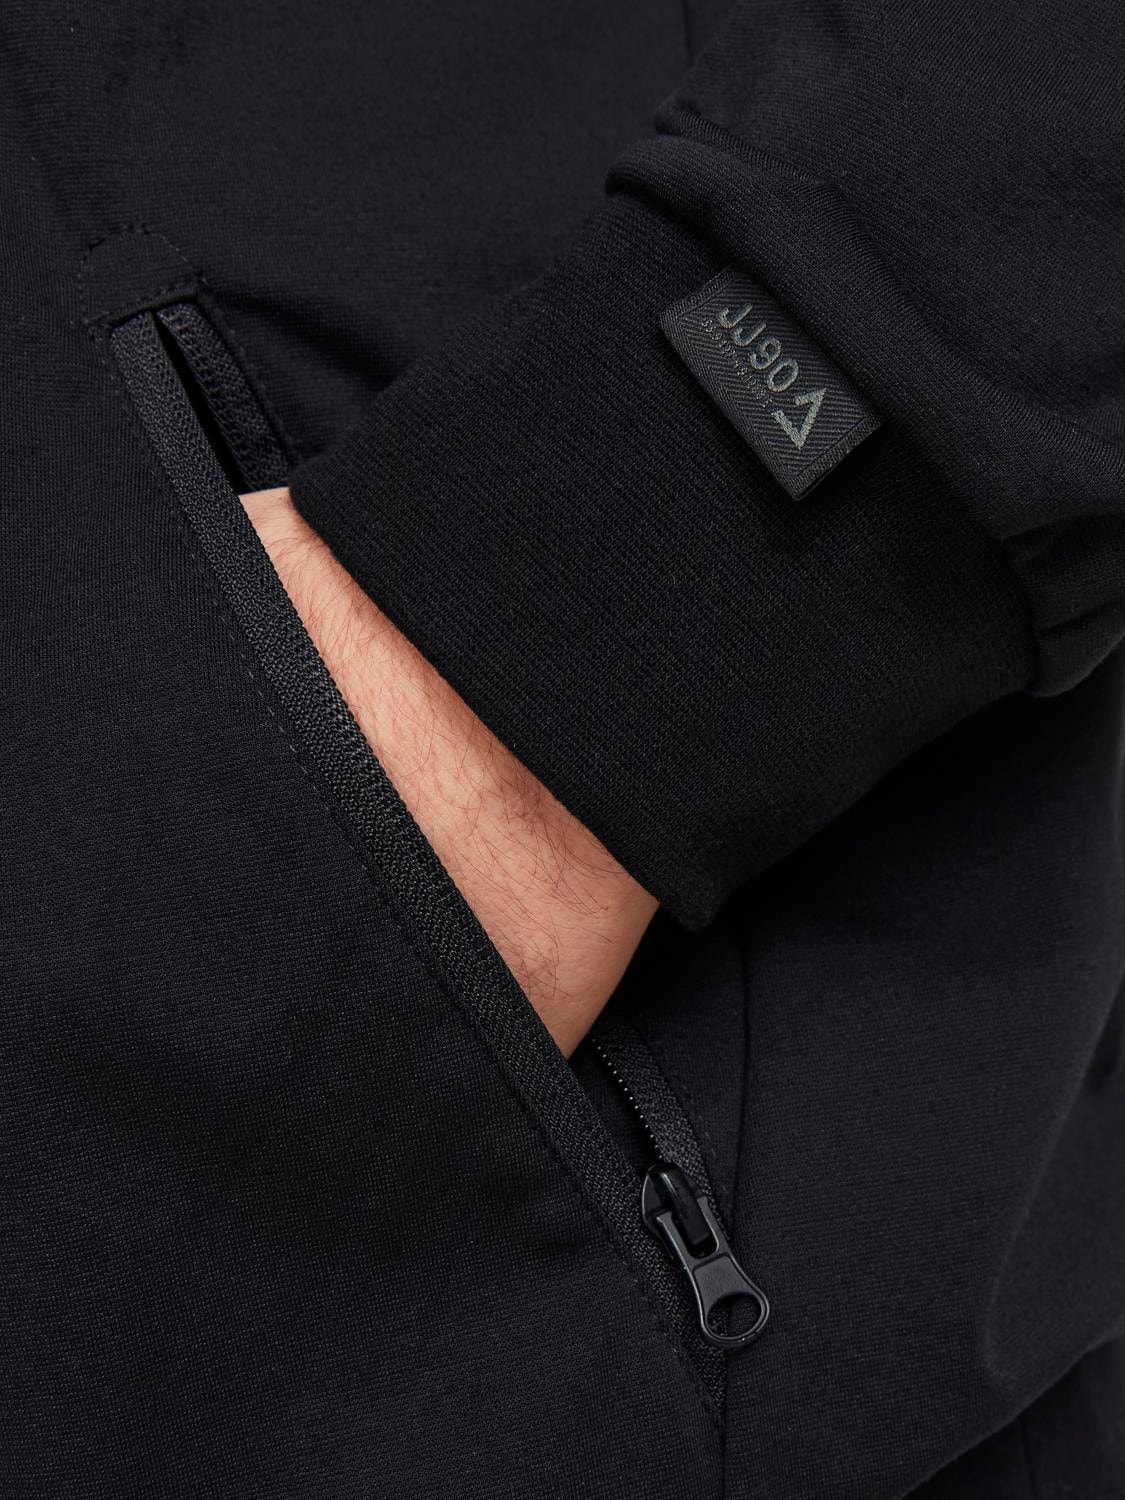 Jack & Jones Plus Plain Zip hoodie -Black - 12257551